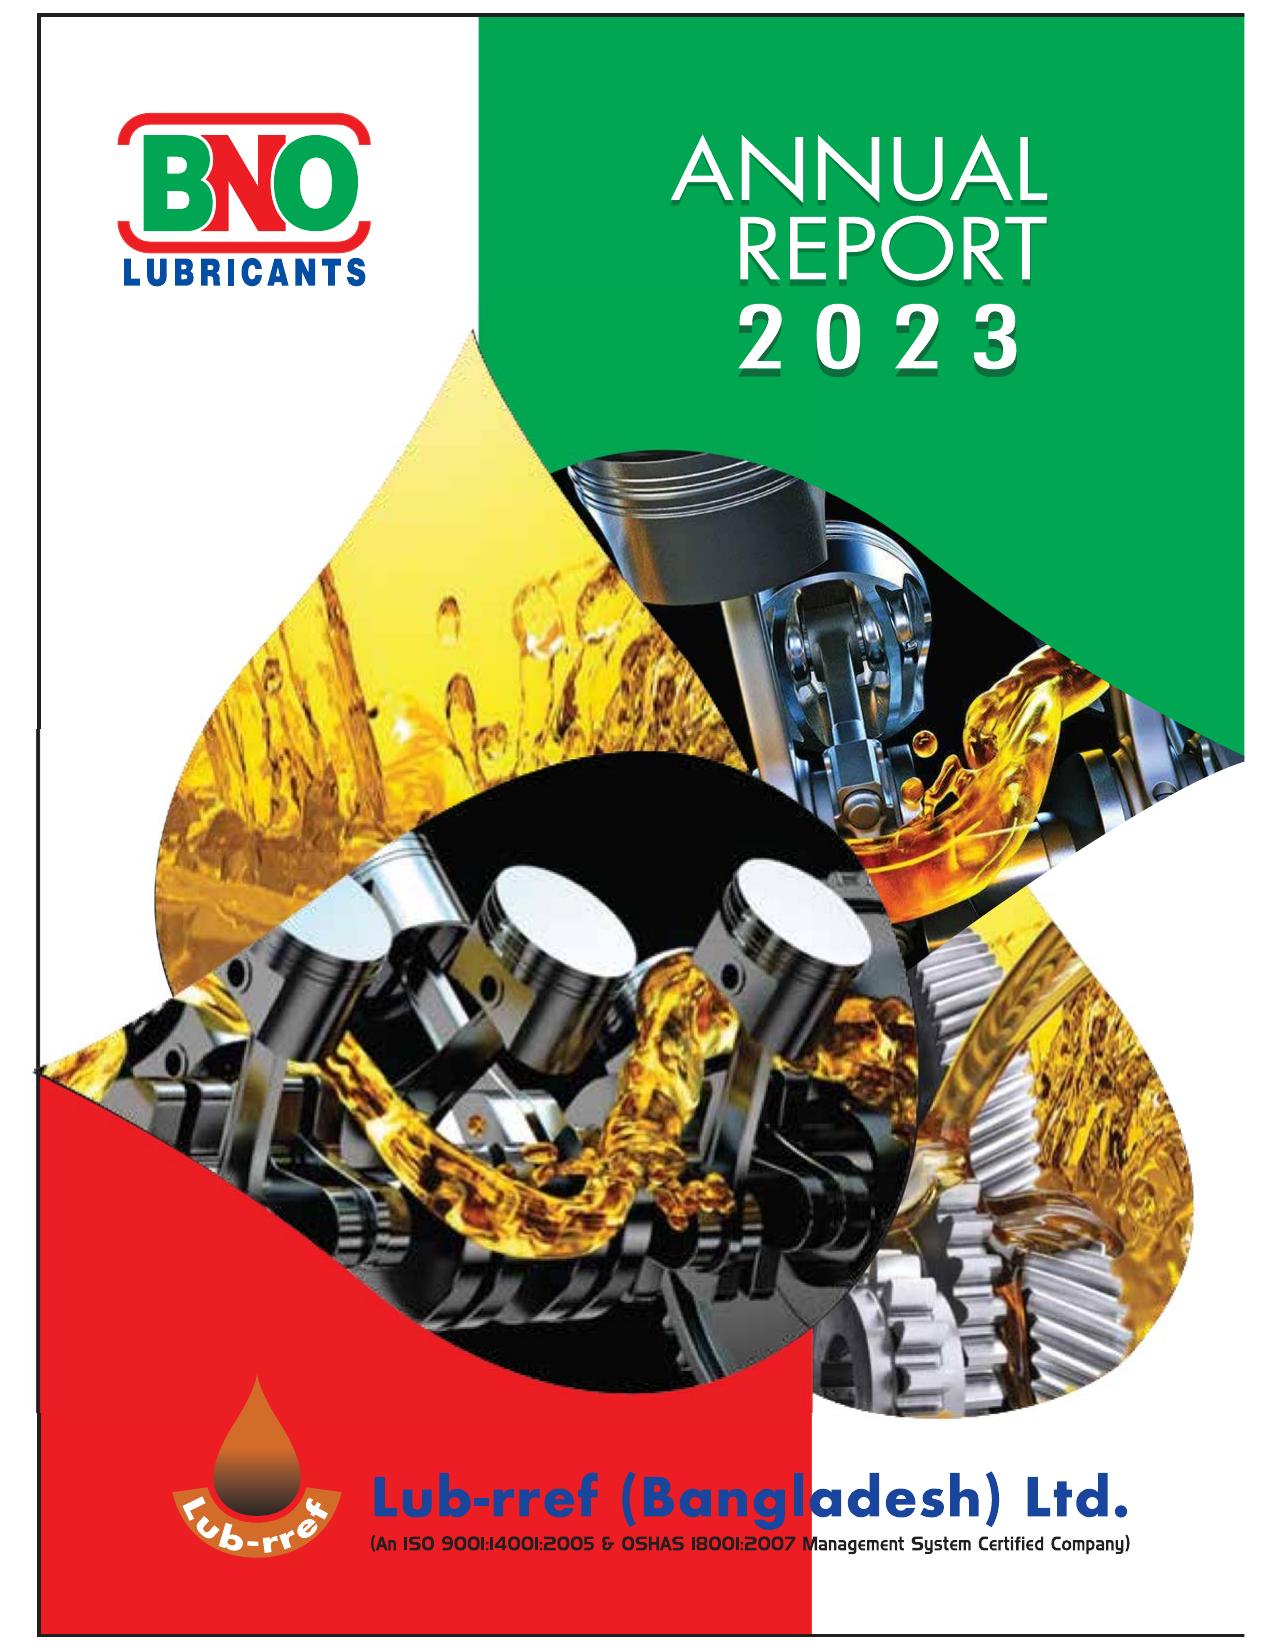 OSCARLUBRICANTS 2023 Annual Report